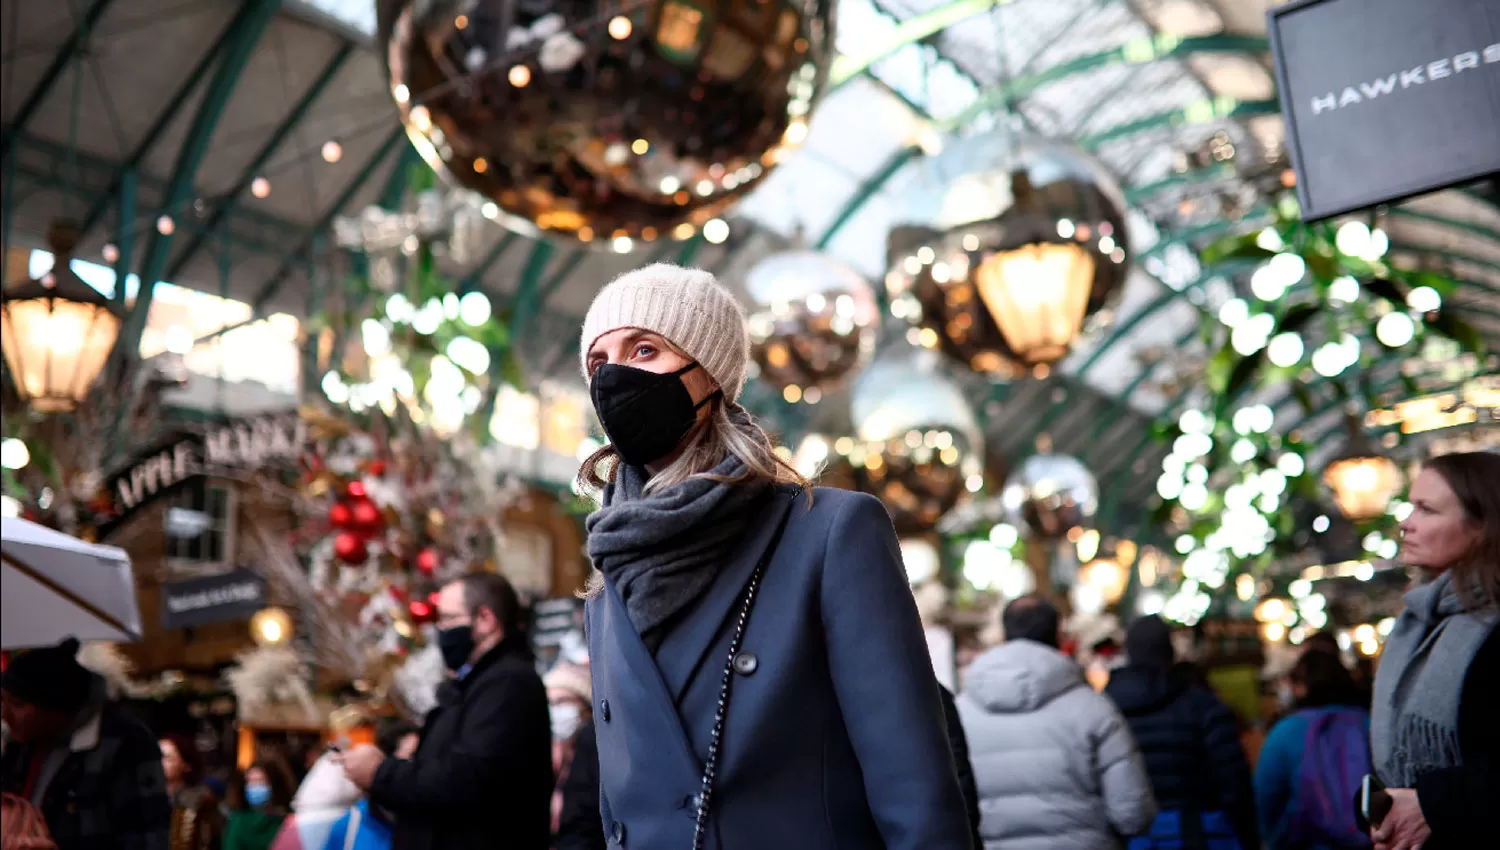 MEDIDAS SANITARIAS. Una mujer usa mascarilla en Covent Garden, Londres, en medio de una creciente ola de contagios en Reino Unido.